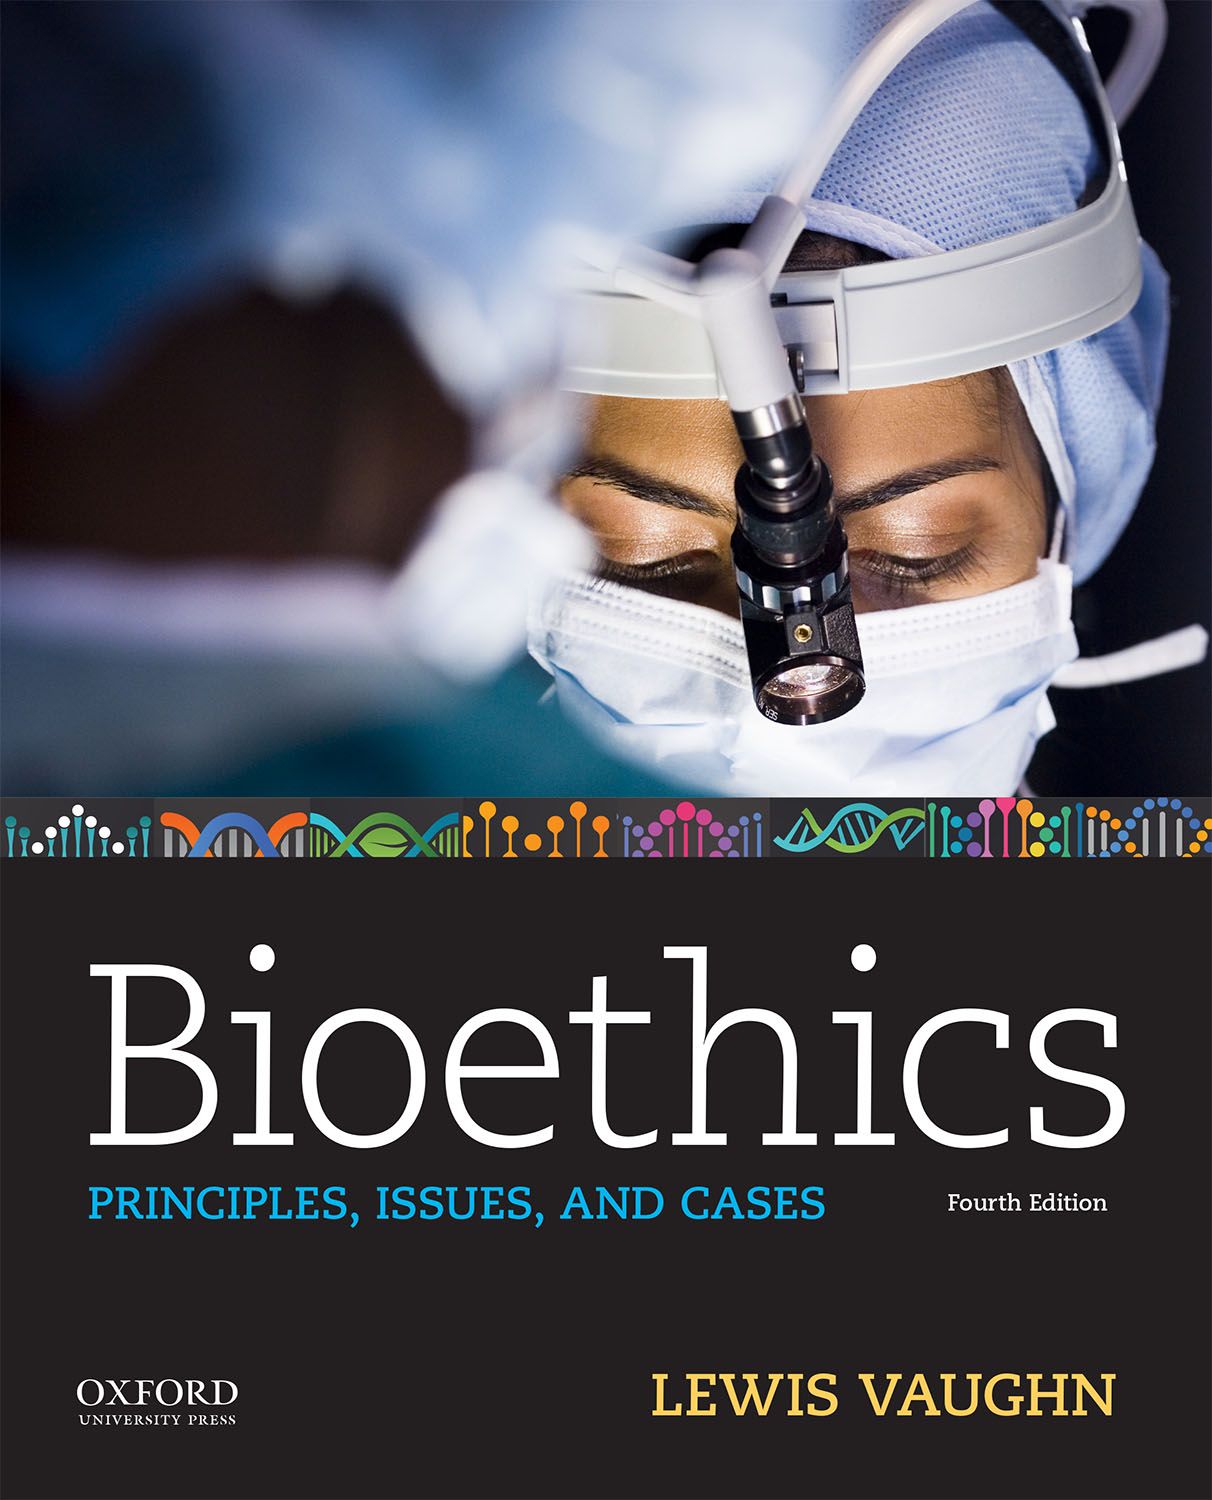 phd in bioethics uk